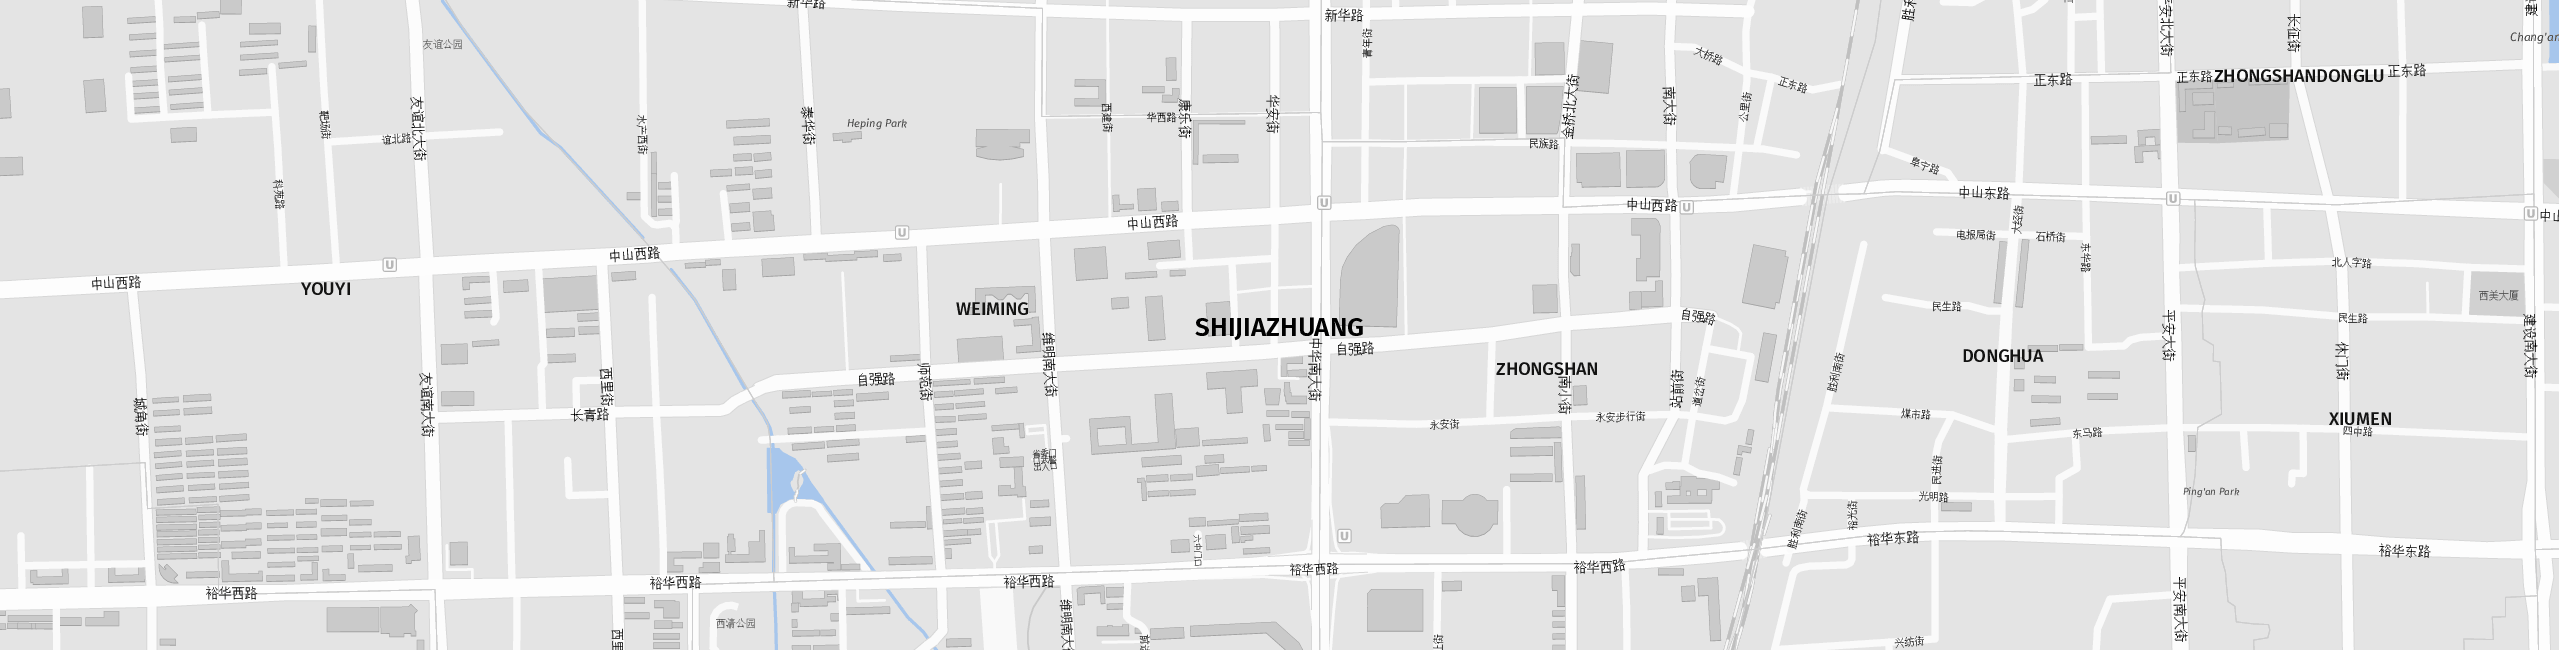 Stadtplan Shijiazhuang zum Downloaden.